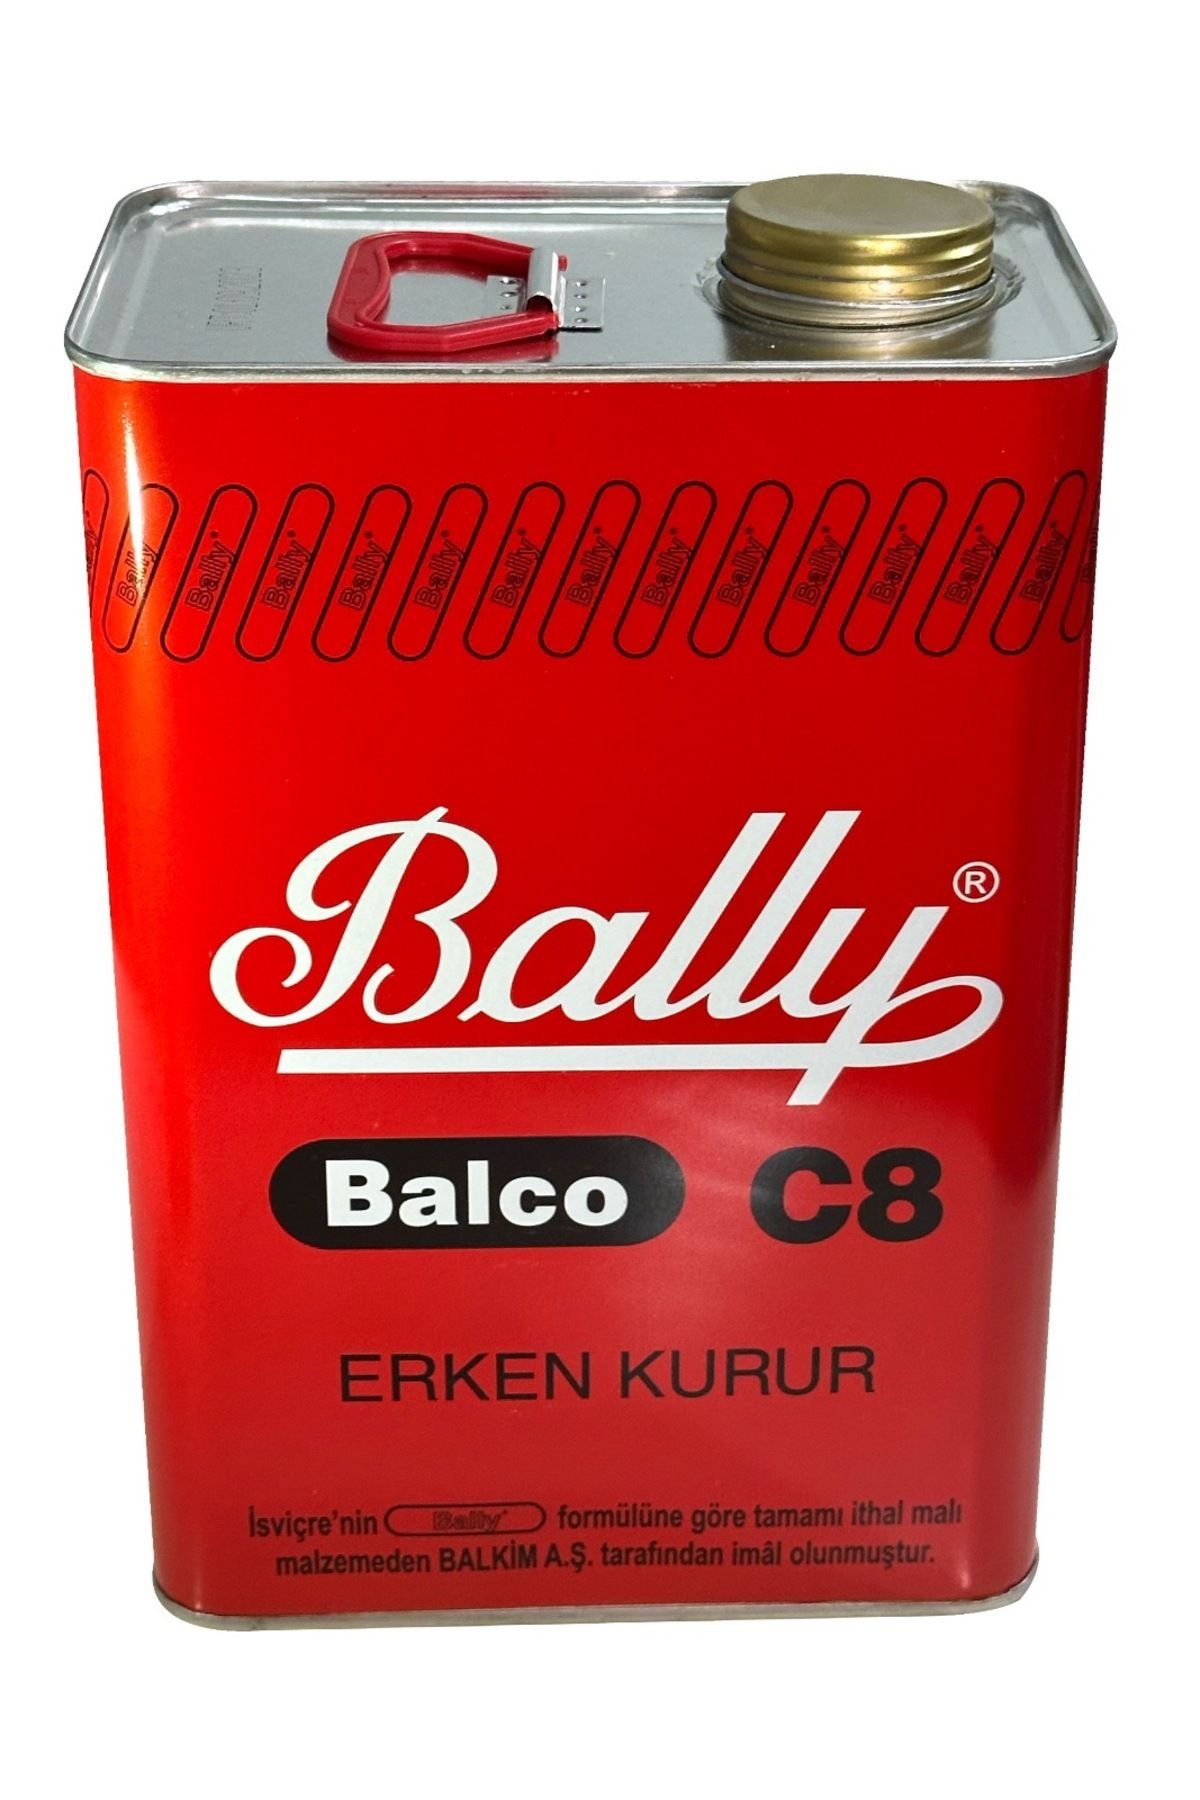 Bally Balco bally yapıştırıcı 3.2 kg